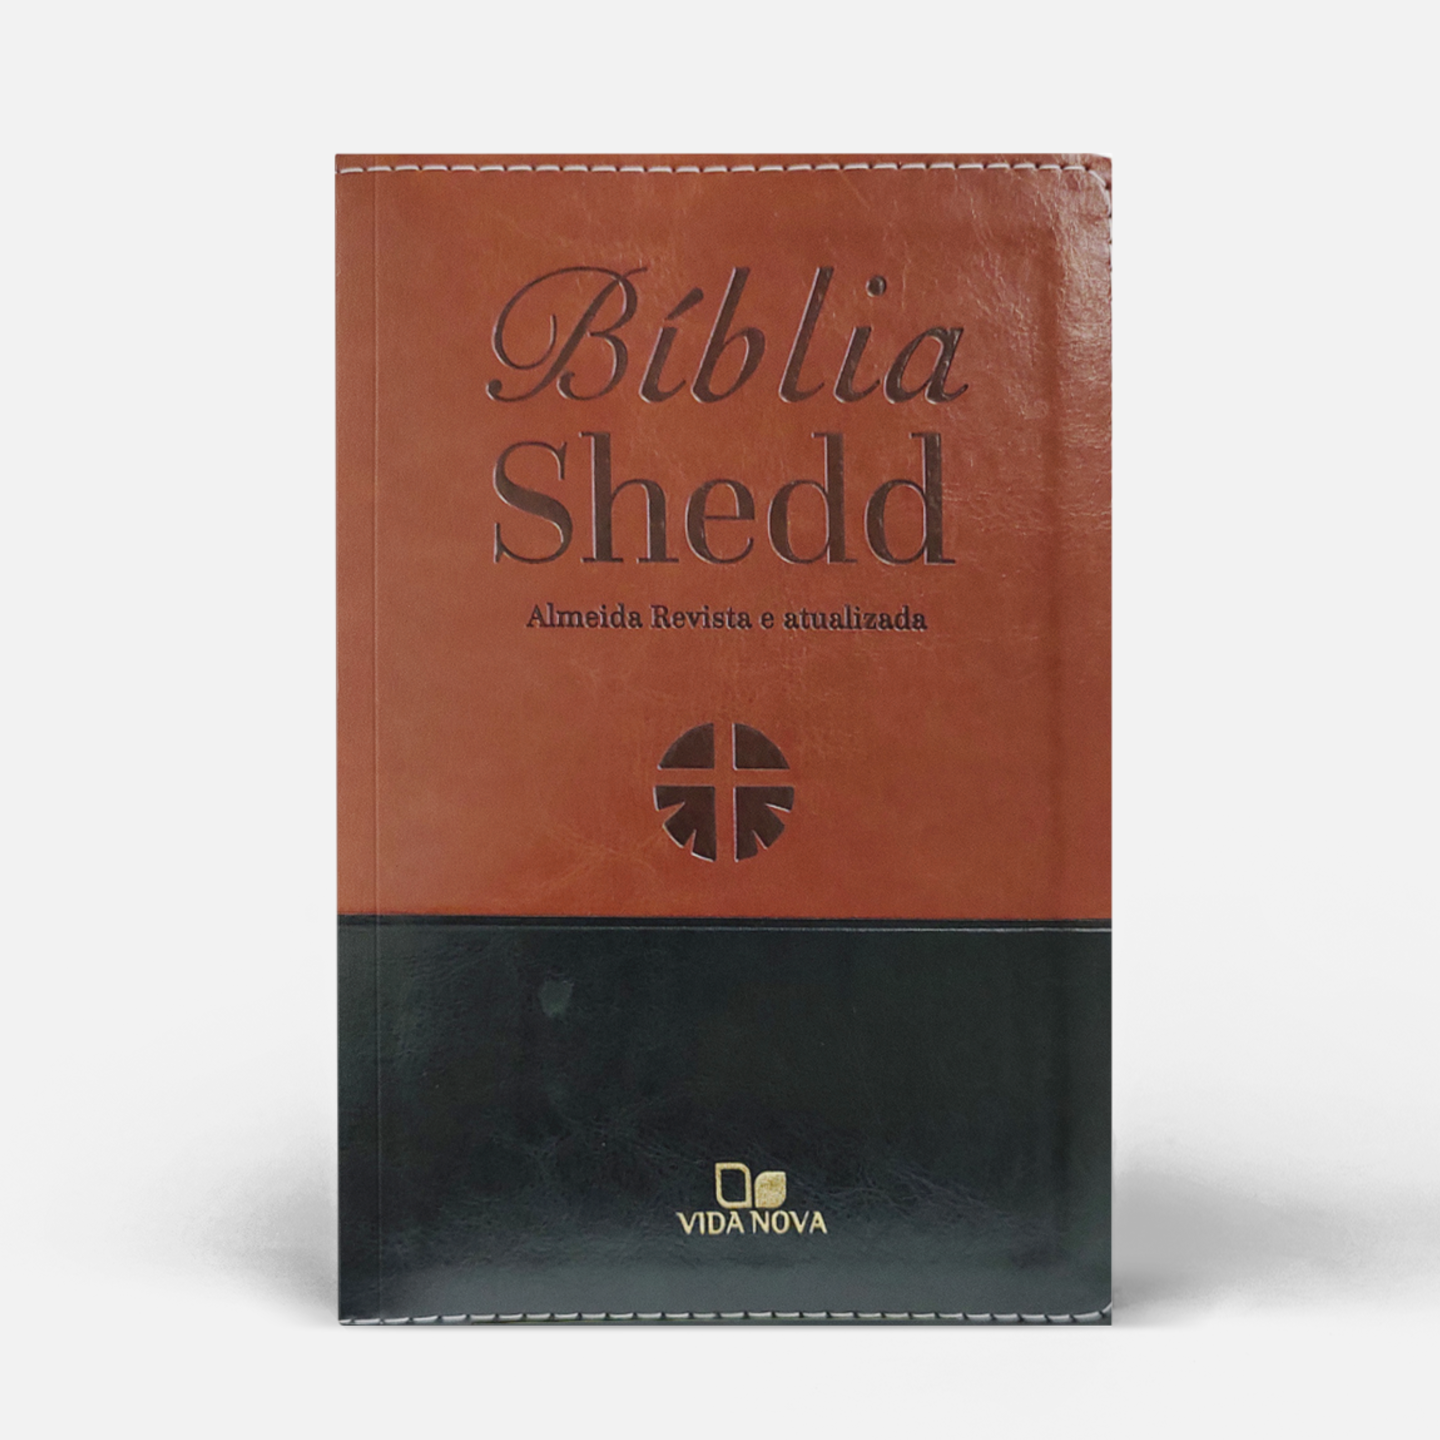 Bíblia Shedd - marrom e preto